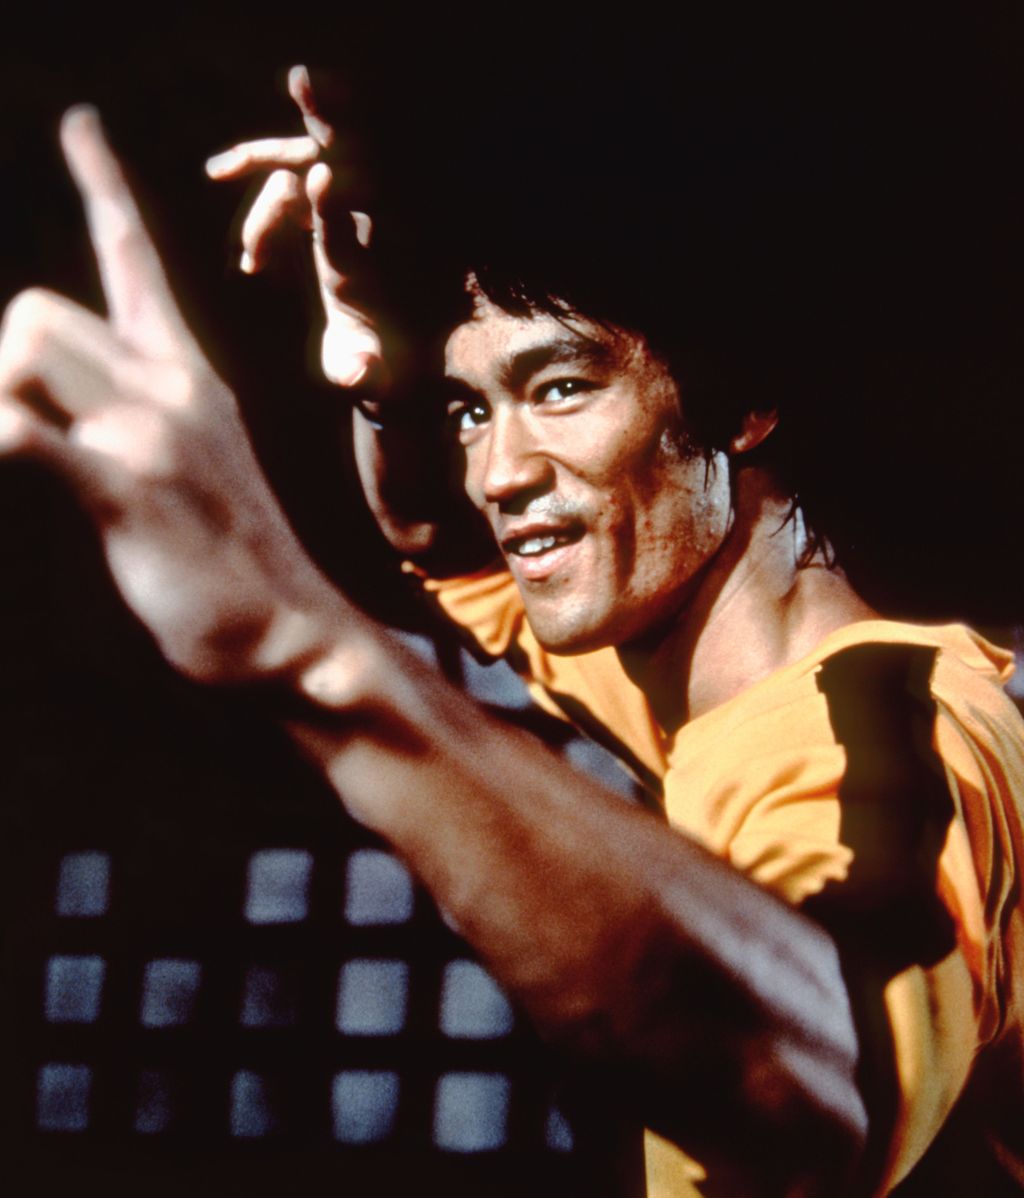 Bruce Lee falleció con 32 años por un edema cerebral, según apuntan las causas oficiales